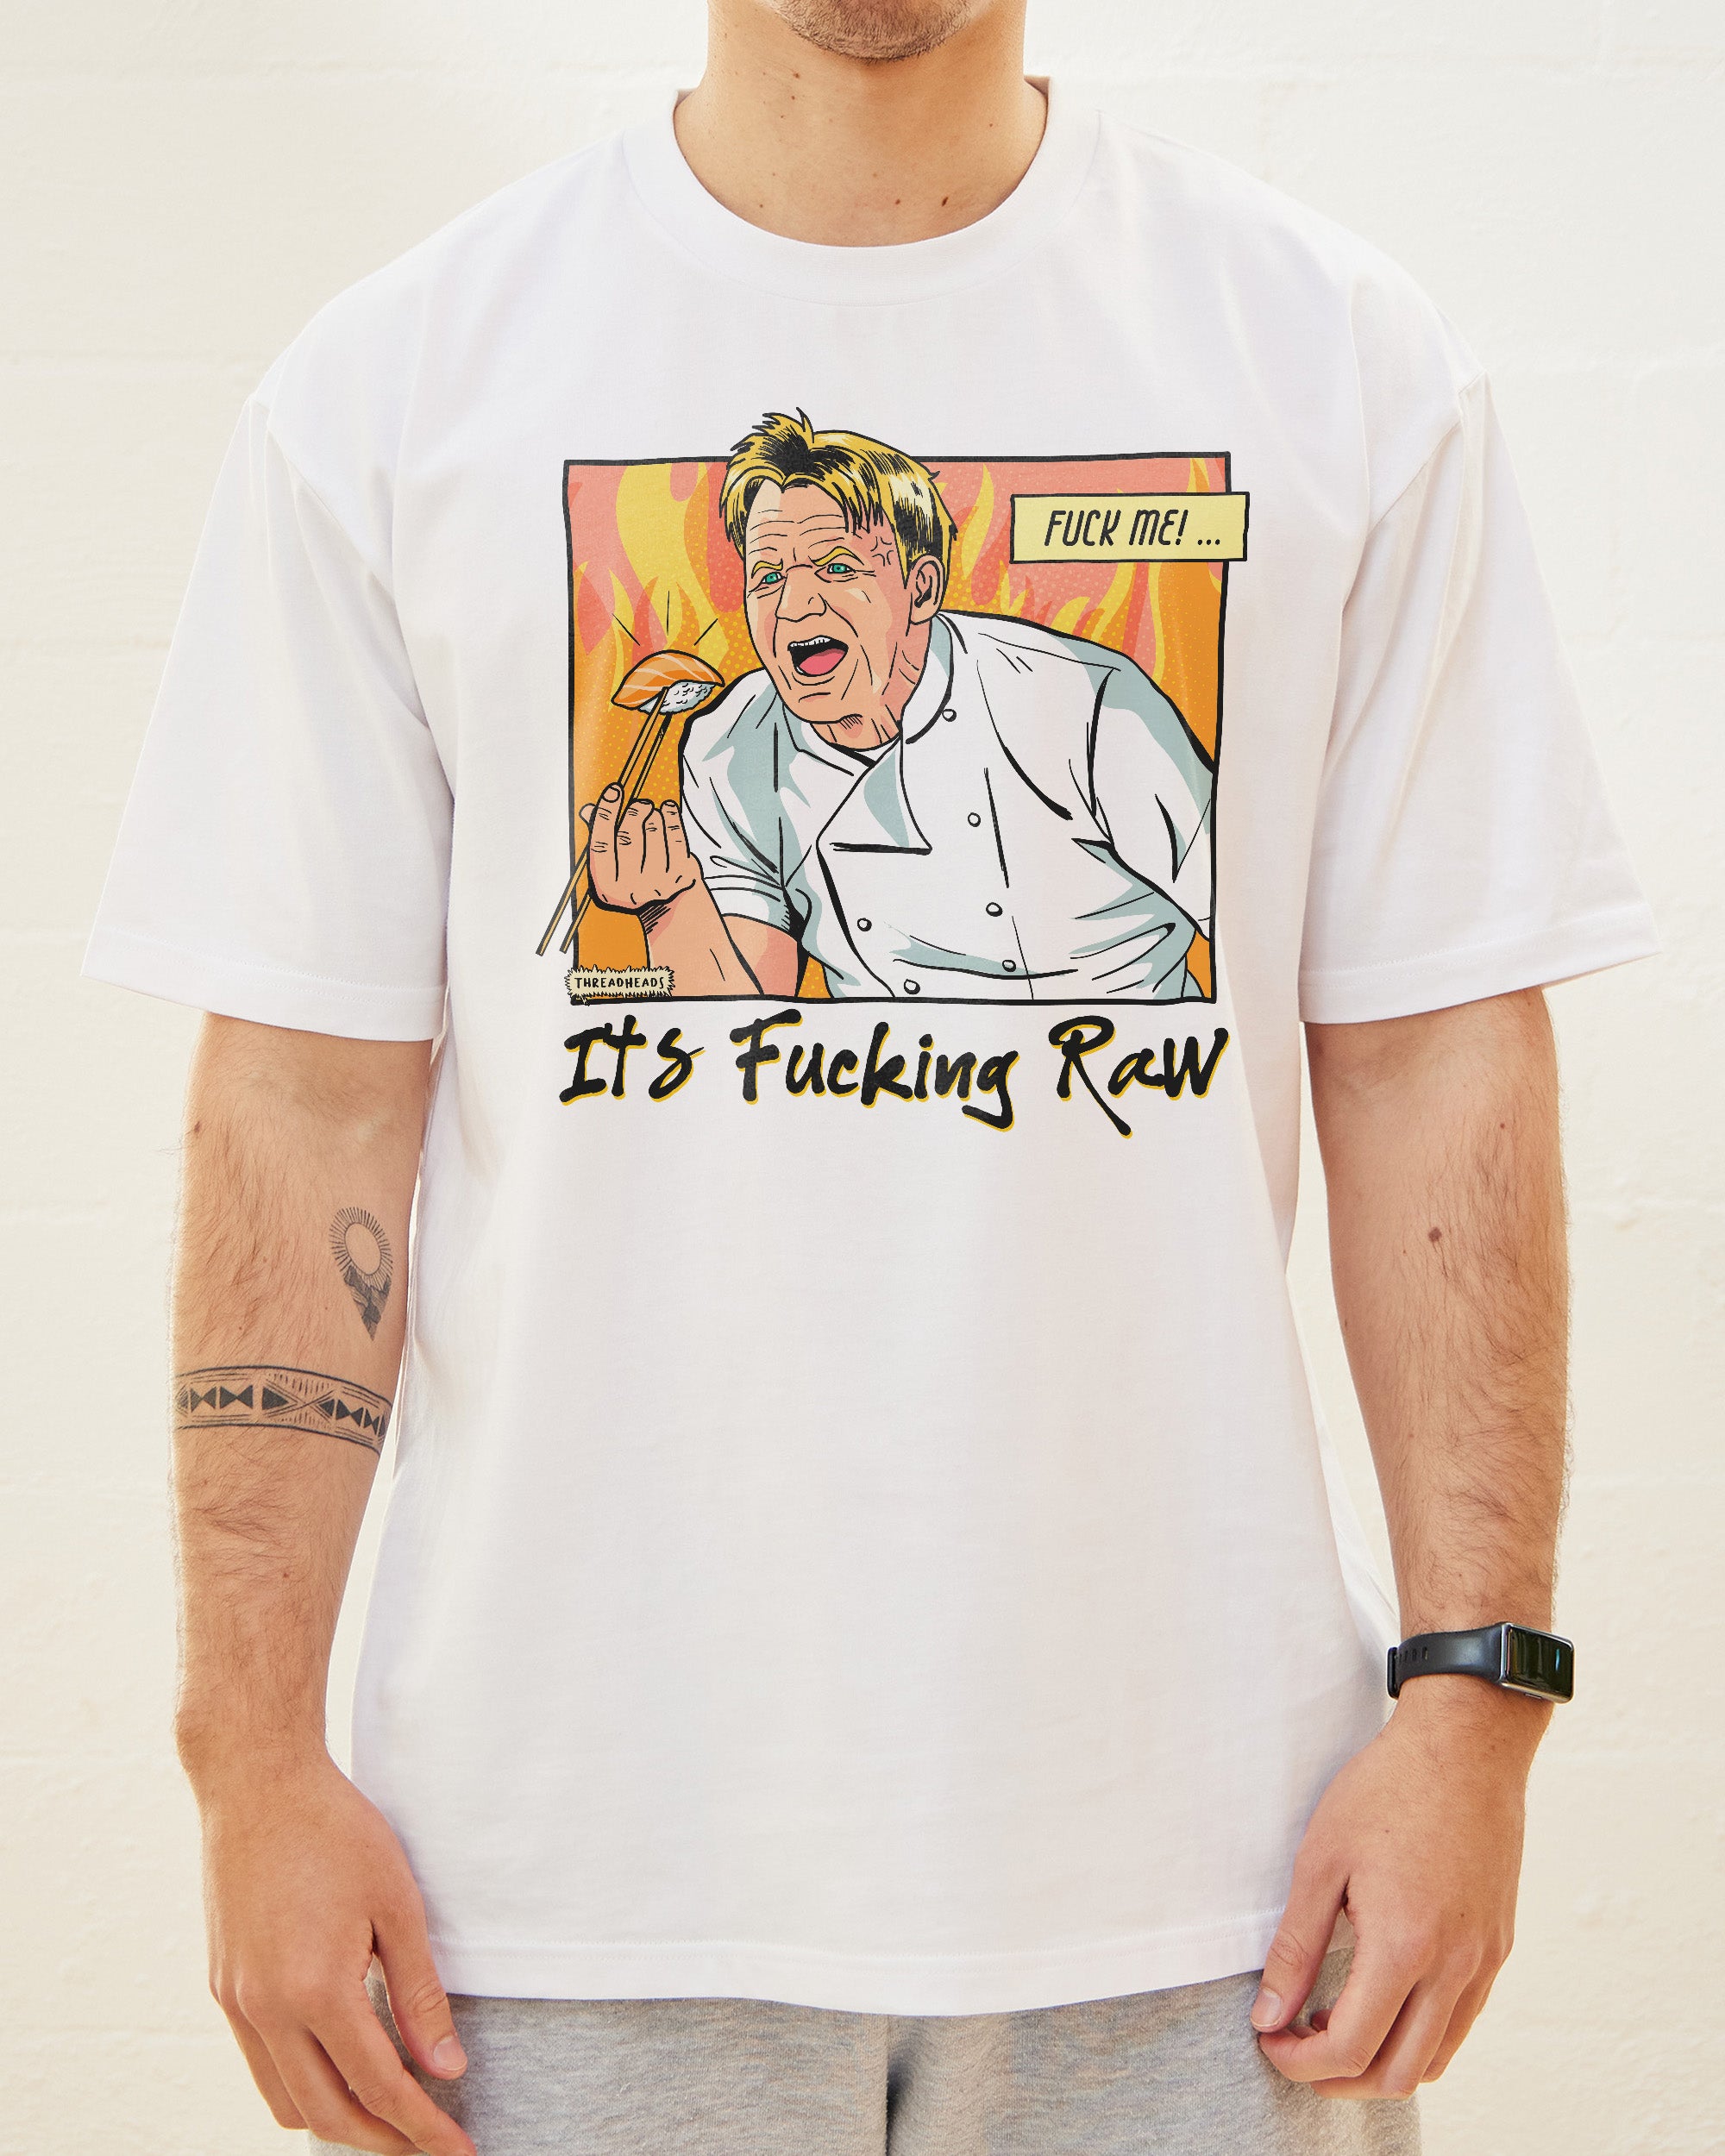 It's Raw! T-Shirt Australia Online